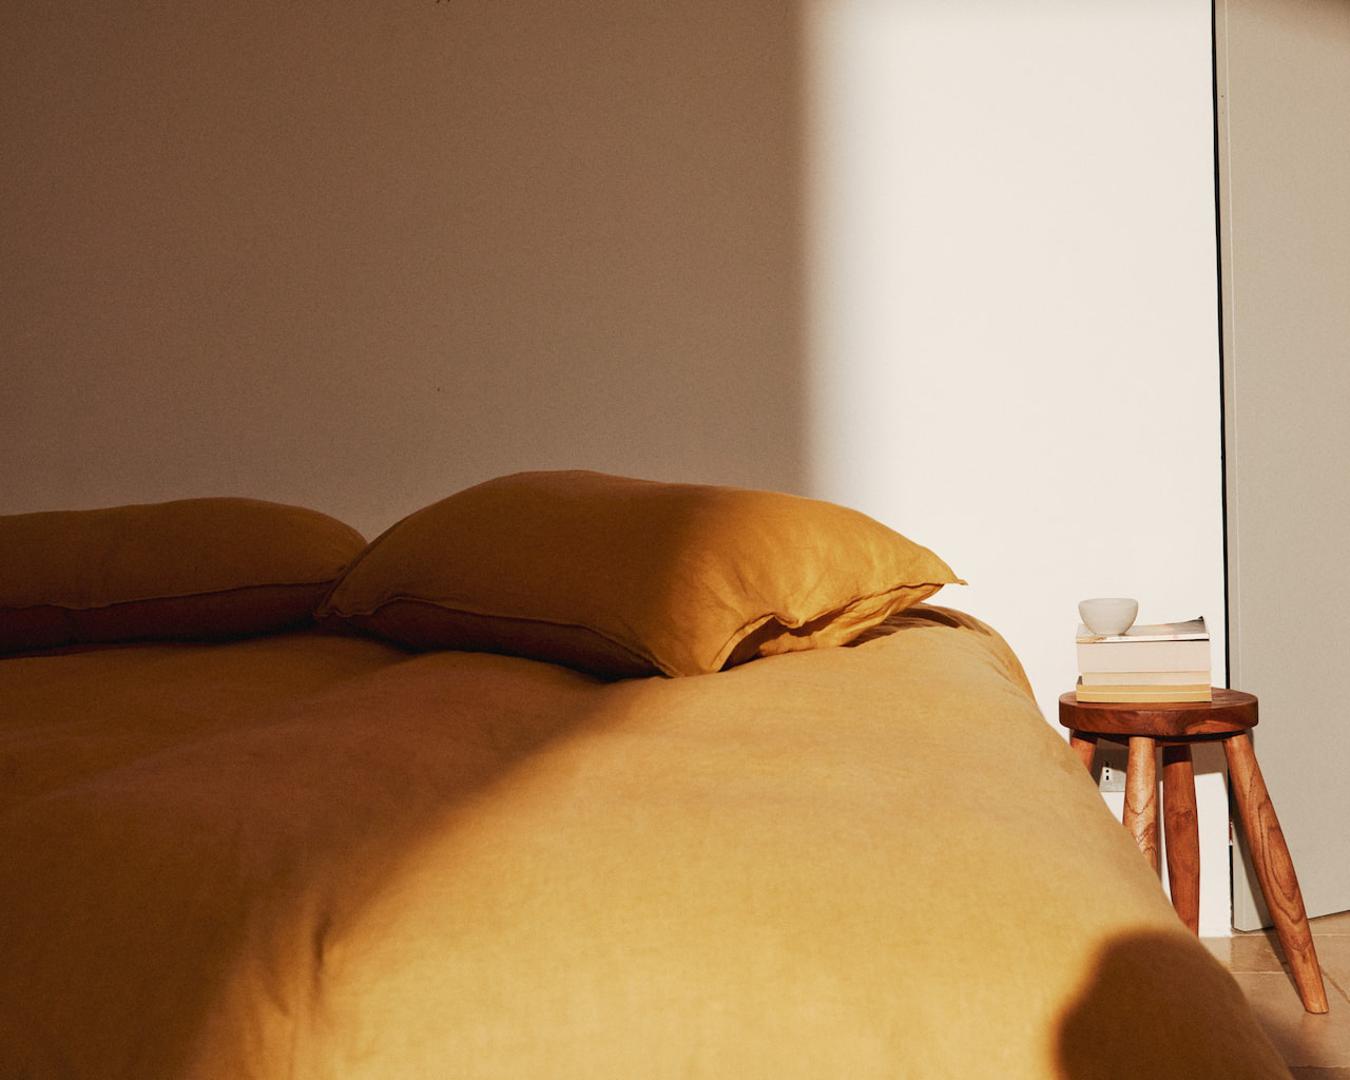 Spavaće sobe uređene su nenametljivo, s posteljnom od lana